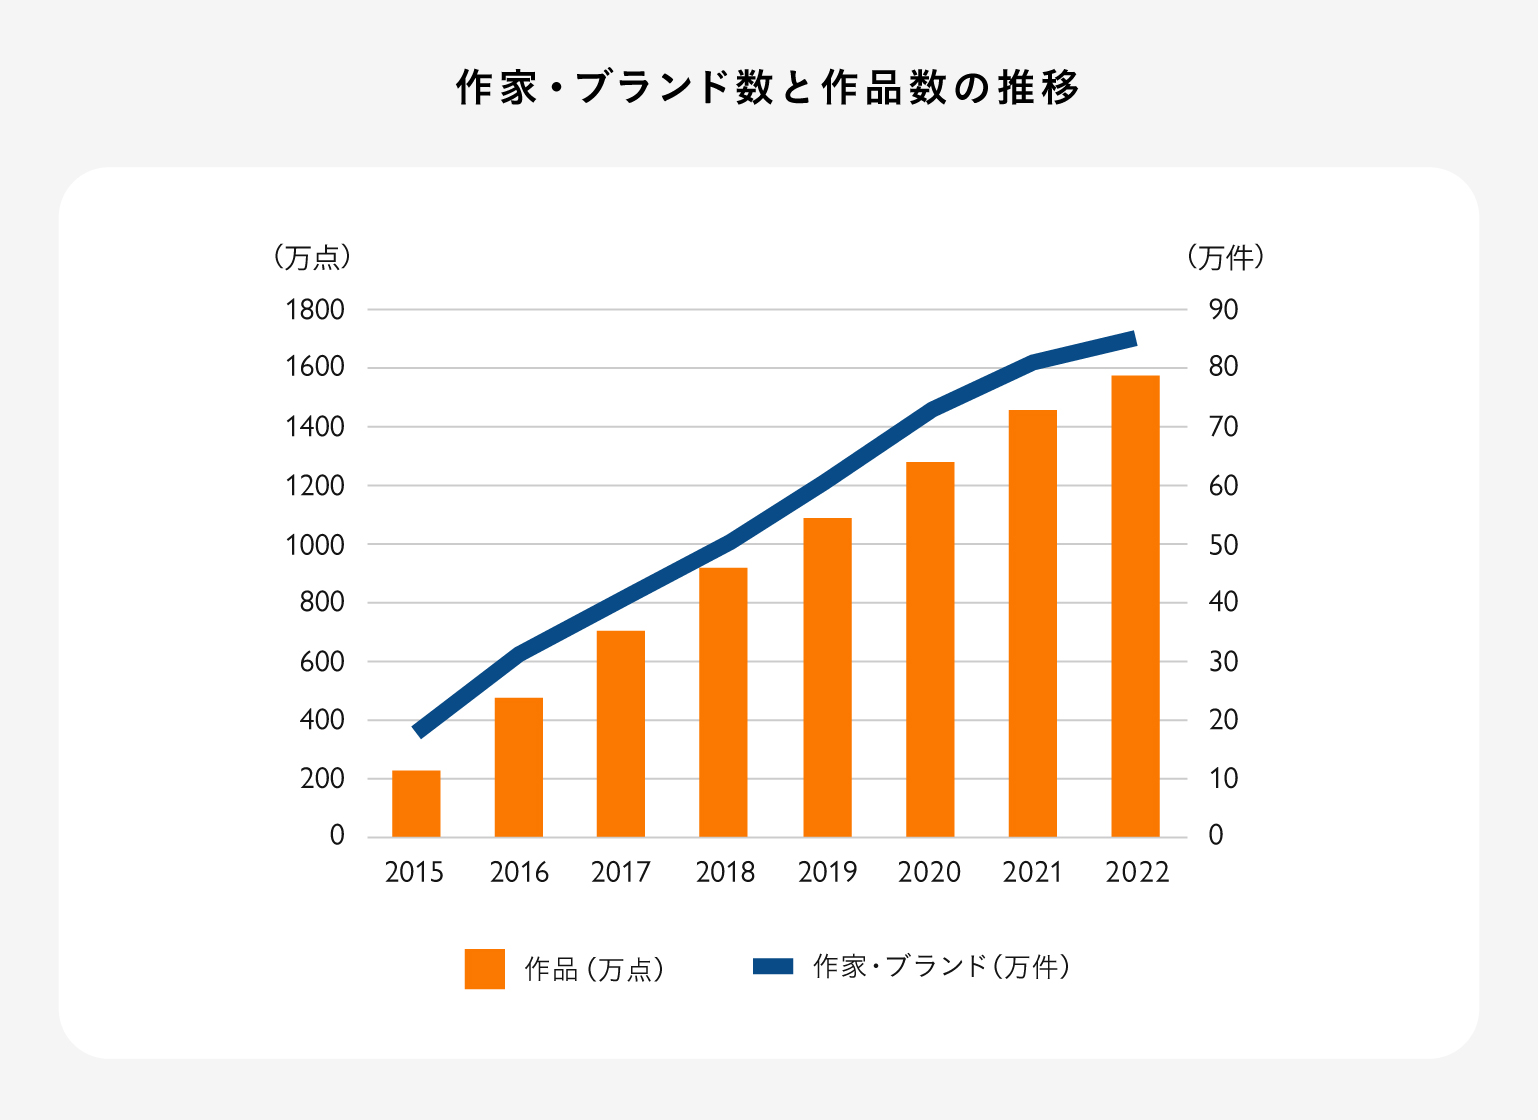 作家・ブランド数と作品数の推移を表したグラフ。作品数は、2015年から2022年にかけて、どちらも右肩上がりで推移している。